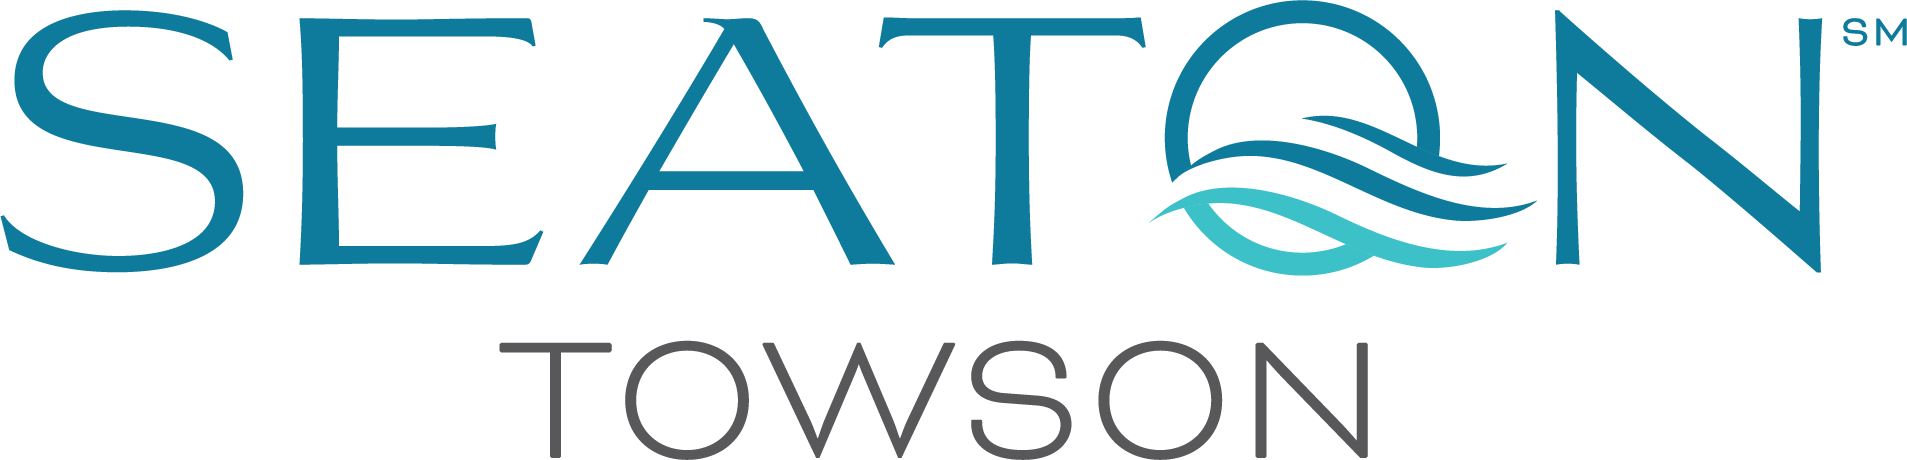 Seaton Towson logo